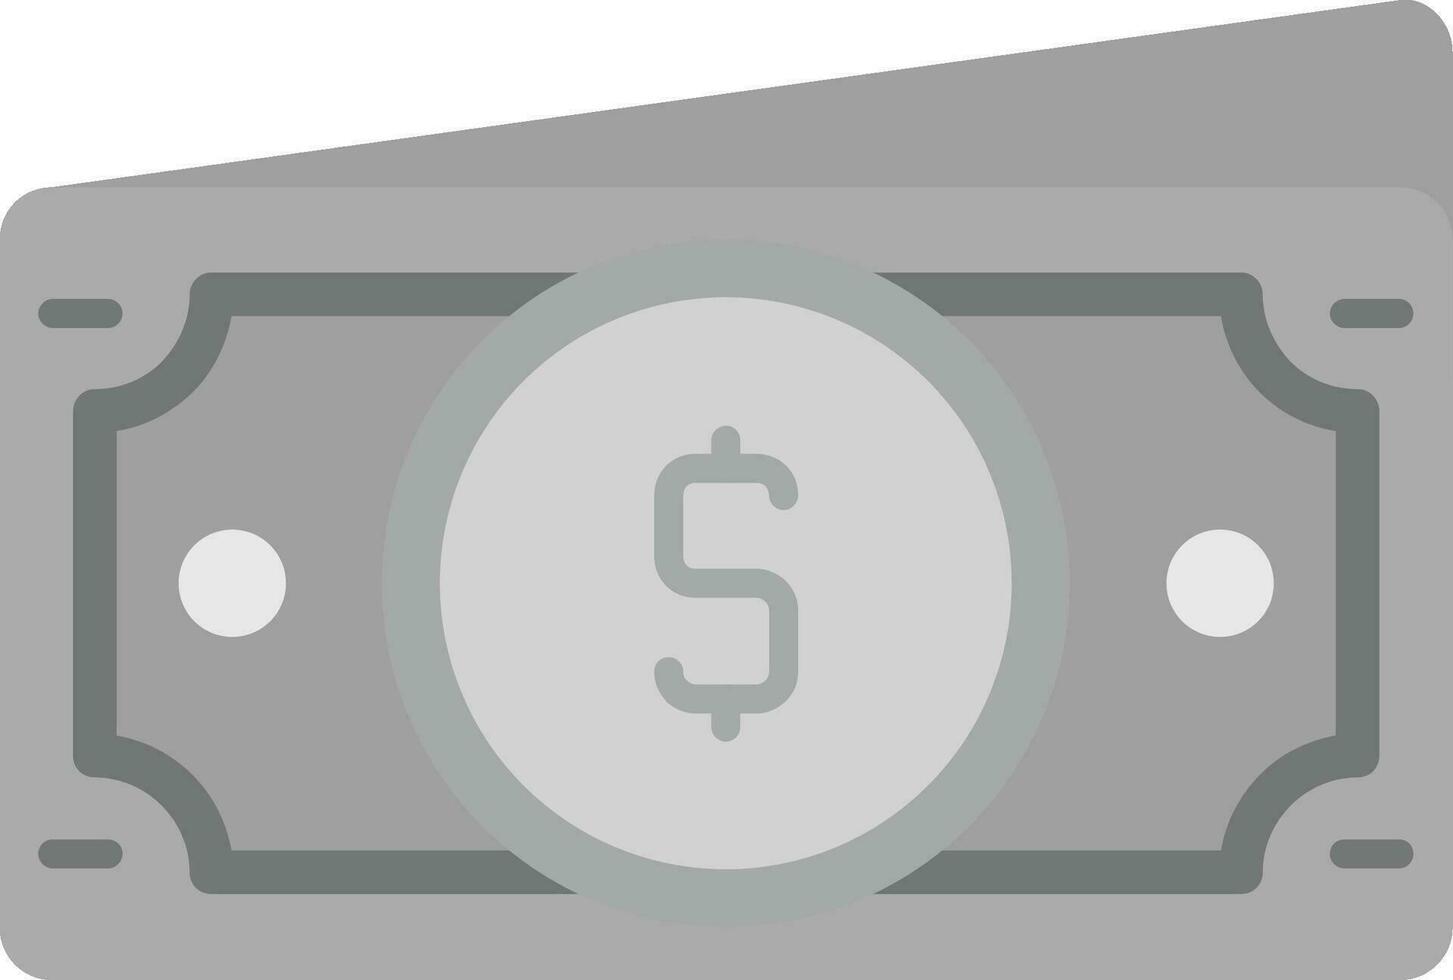 Dollar Grey scale Icon vector